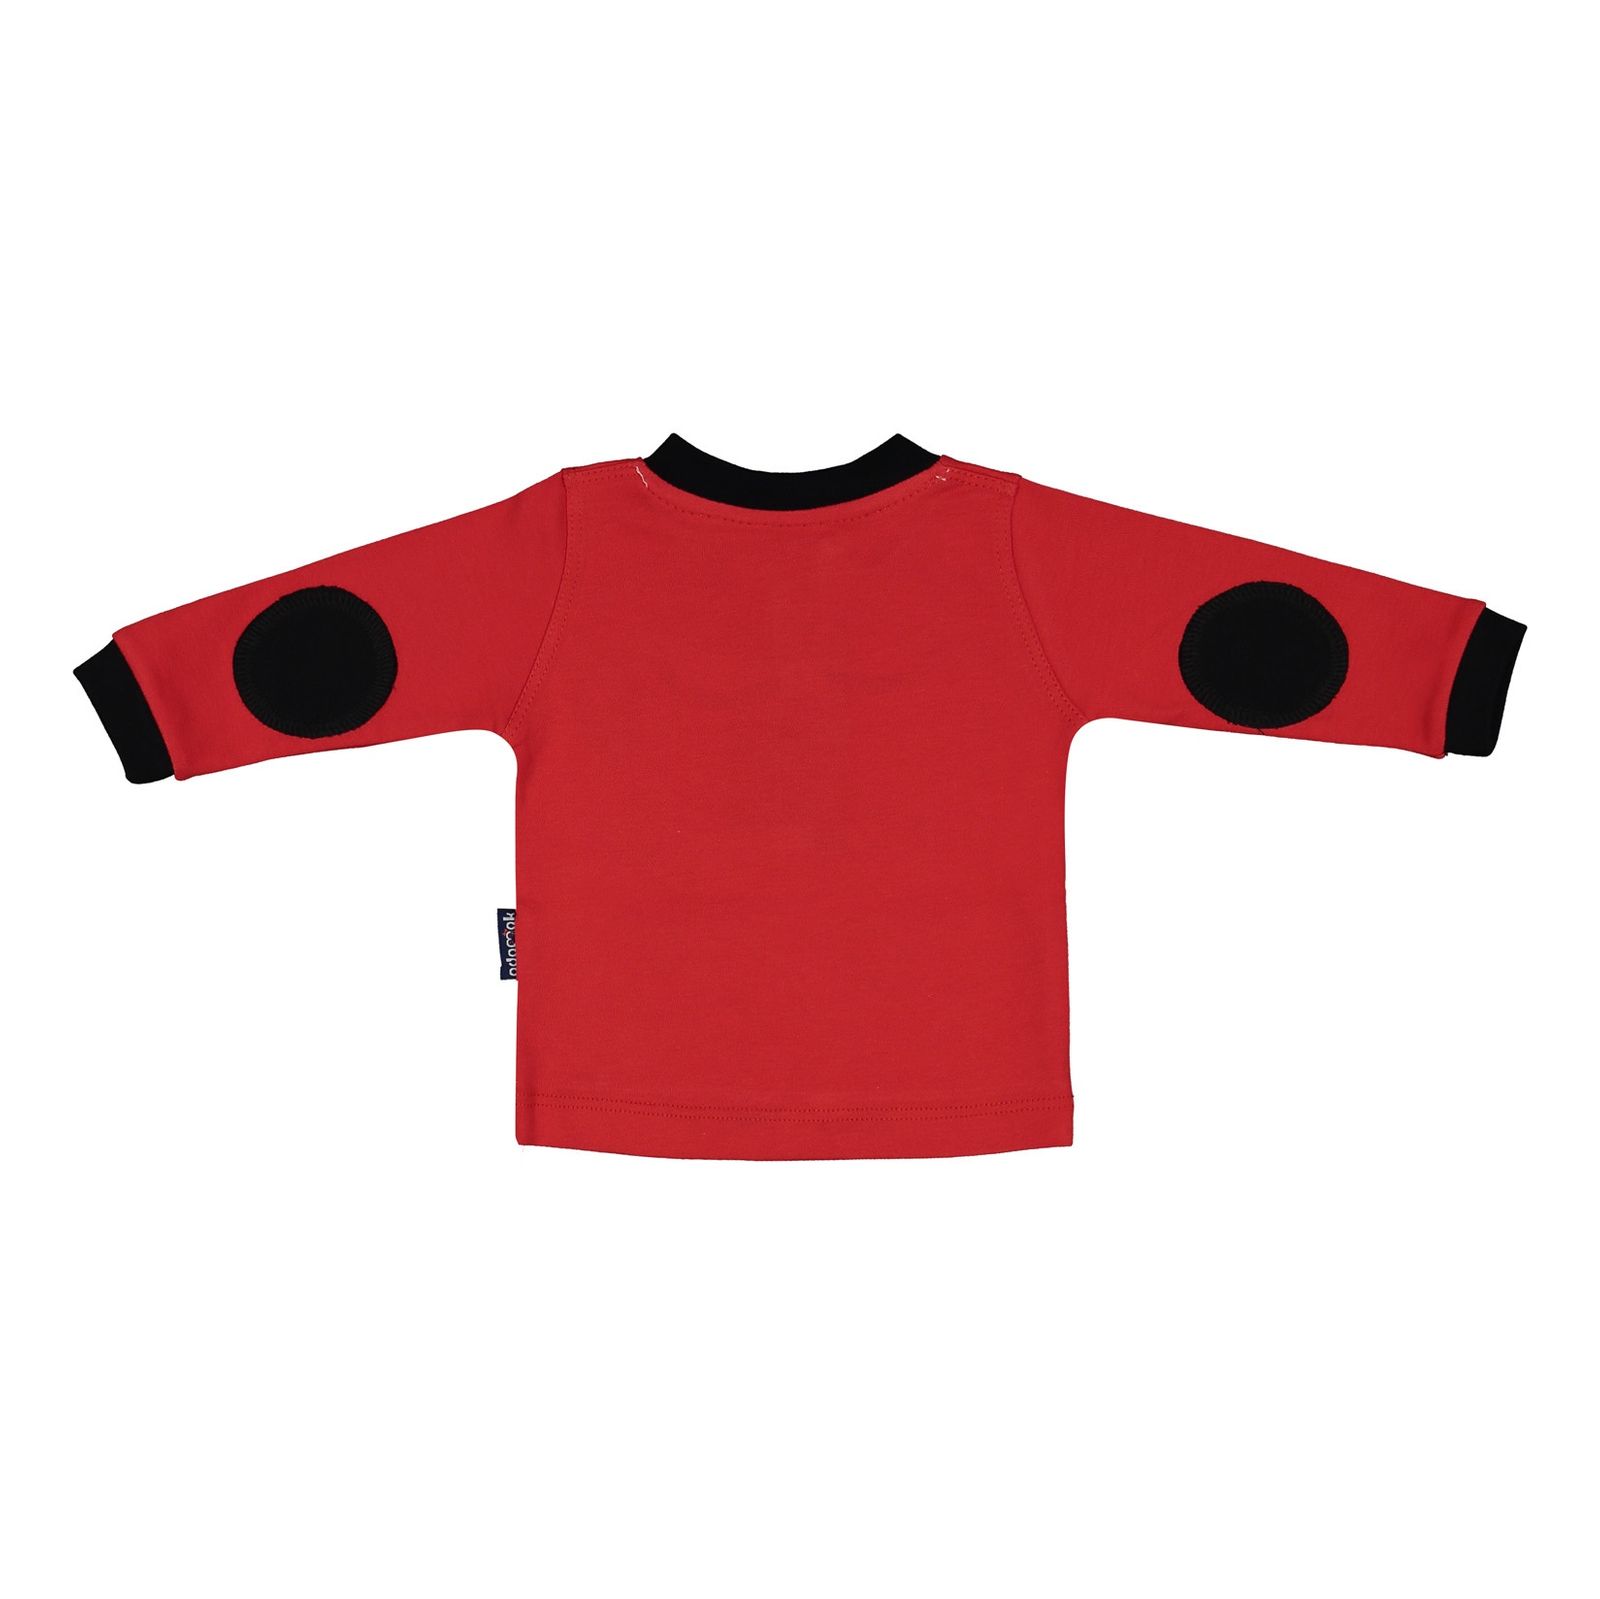 ست تی شرت و شلوار نوزادی آدمک مدل 2171101-72 - قرمز - 2